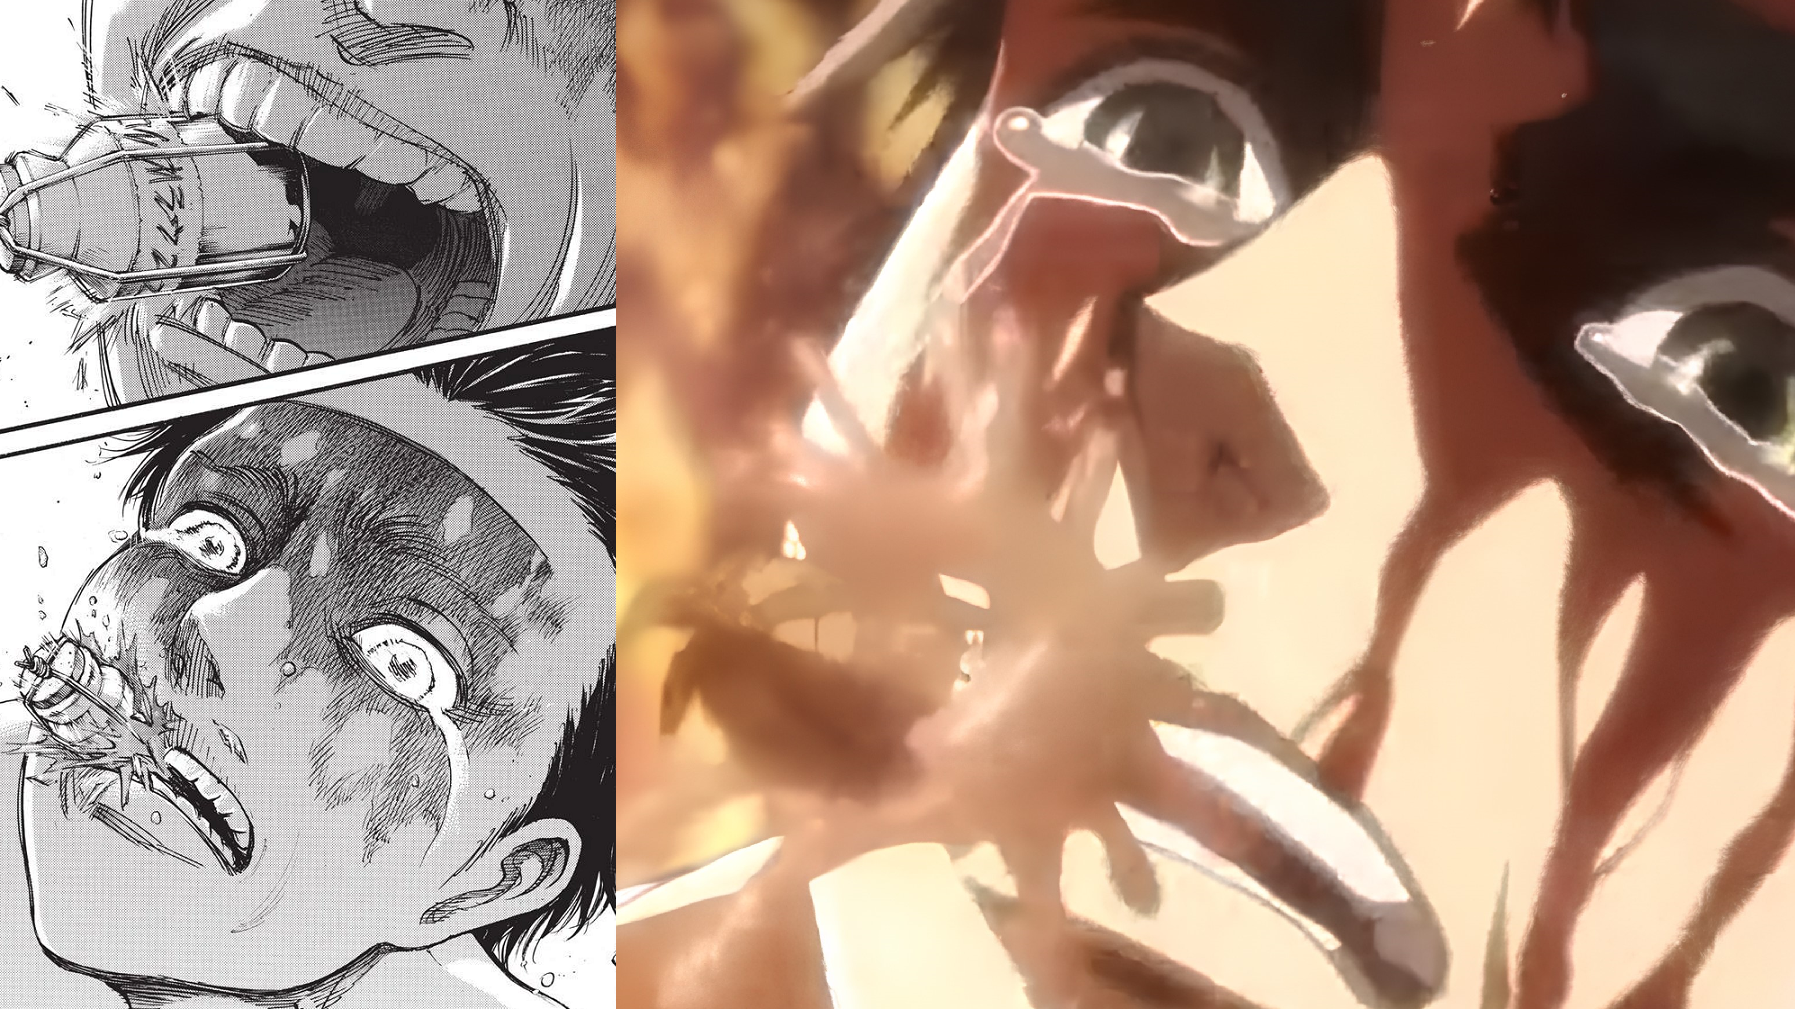 Attack On Titan Armor Bottle Eren Gets Crystalization Powers Manga Vs Anime